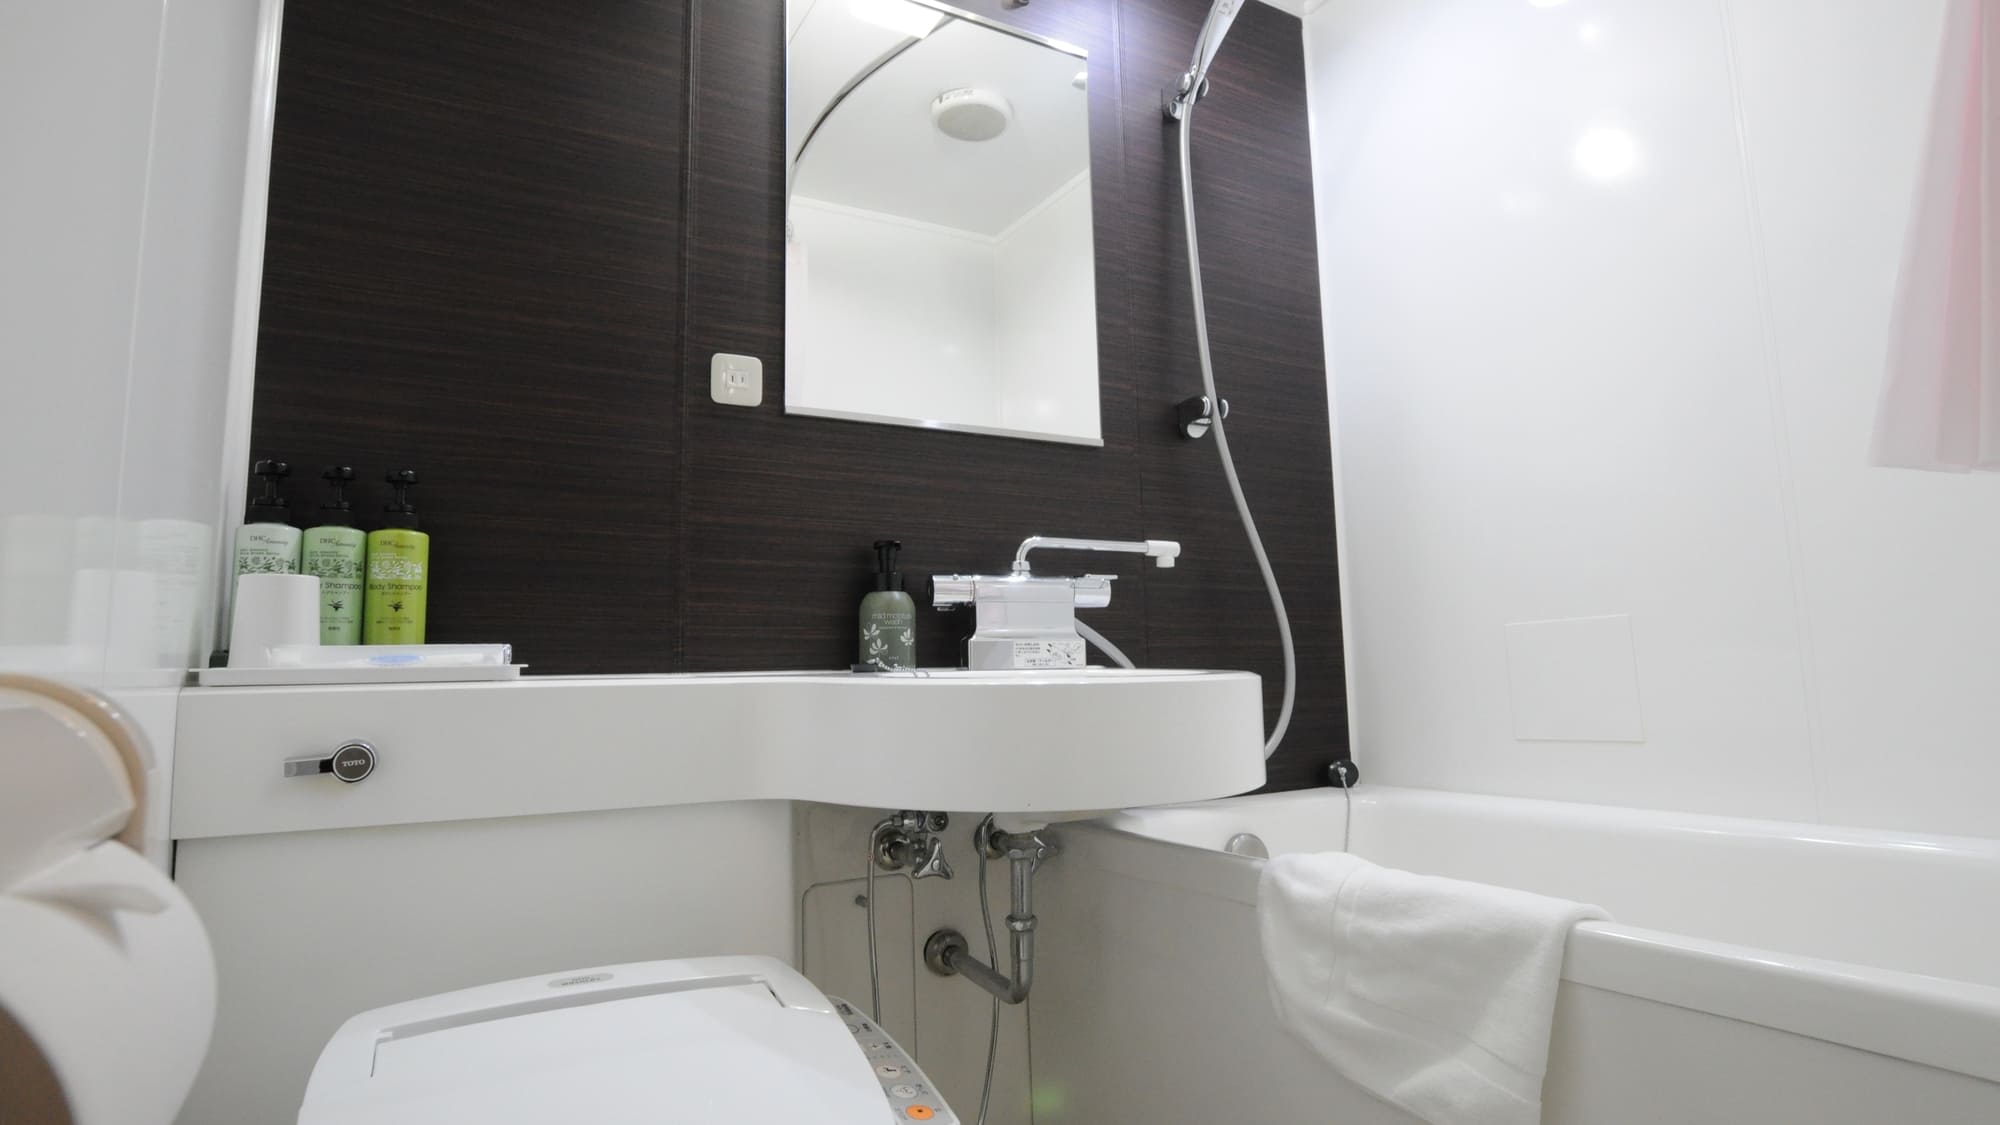 ◆改装済みバスルーム～全室ウォッシュレット付きトイレで清潔にご利用いただけます。